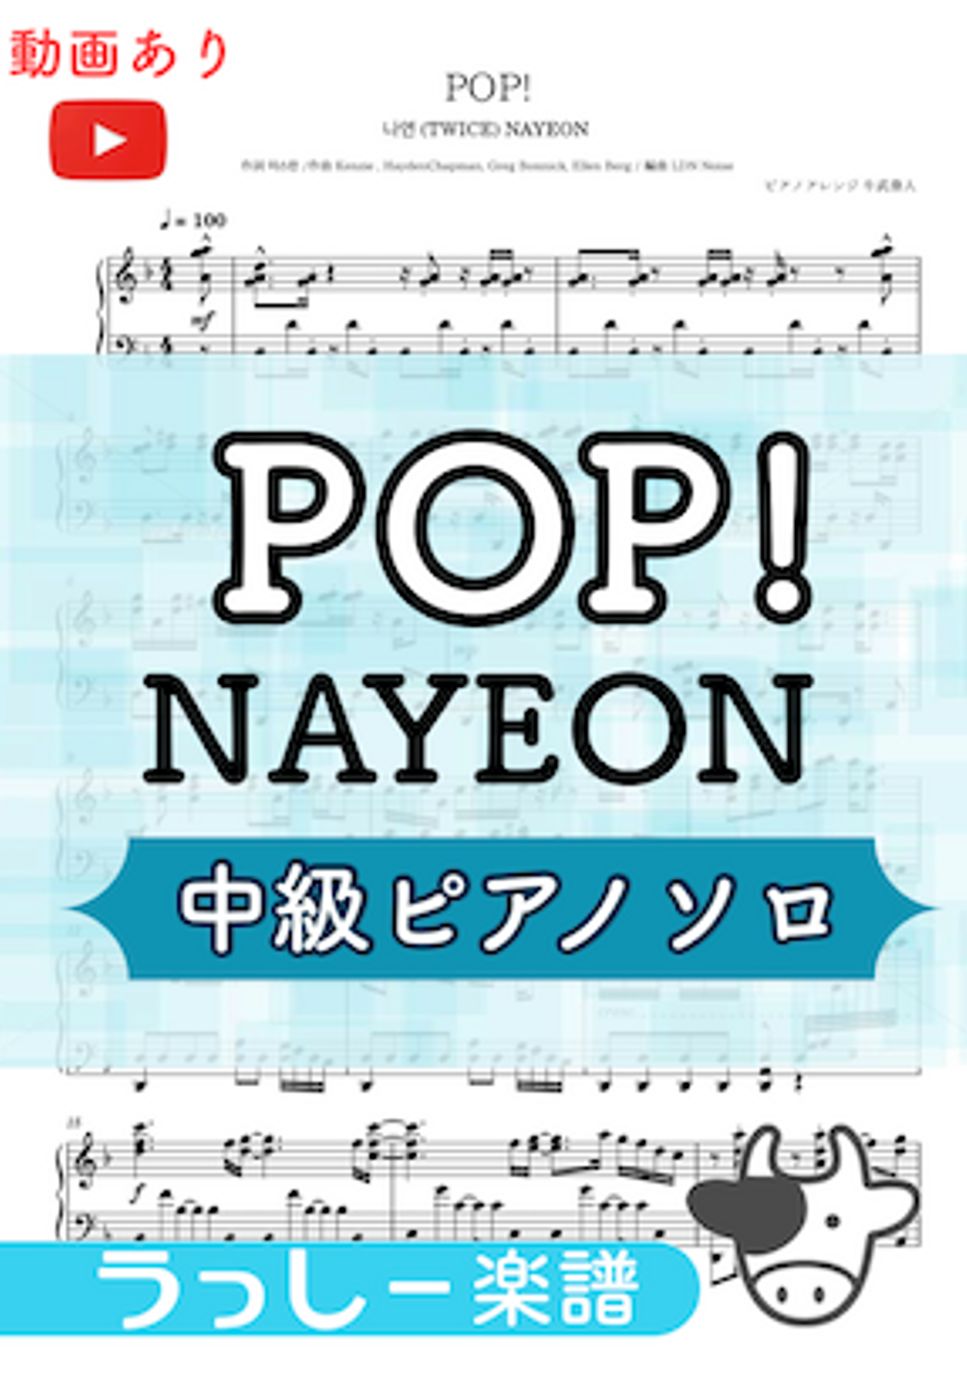 NAYEON - POP! (中級ピアノソロ) by 牛武奏人